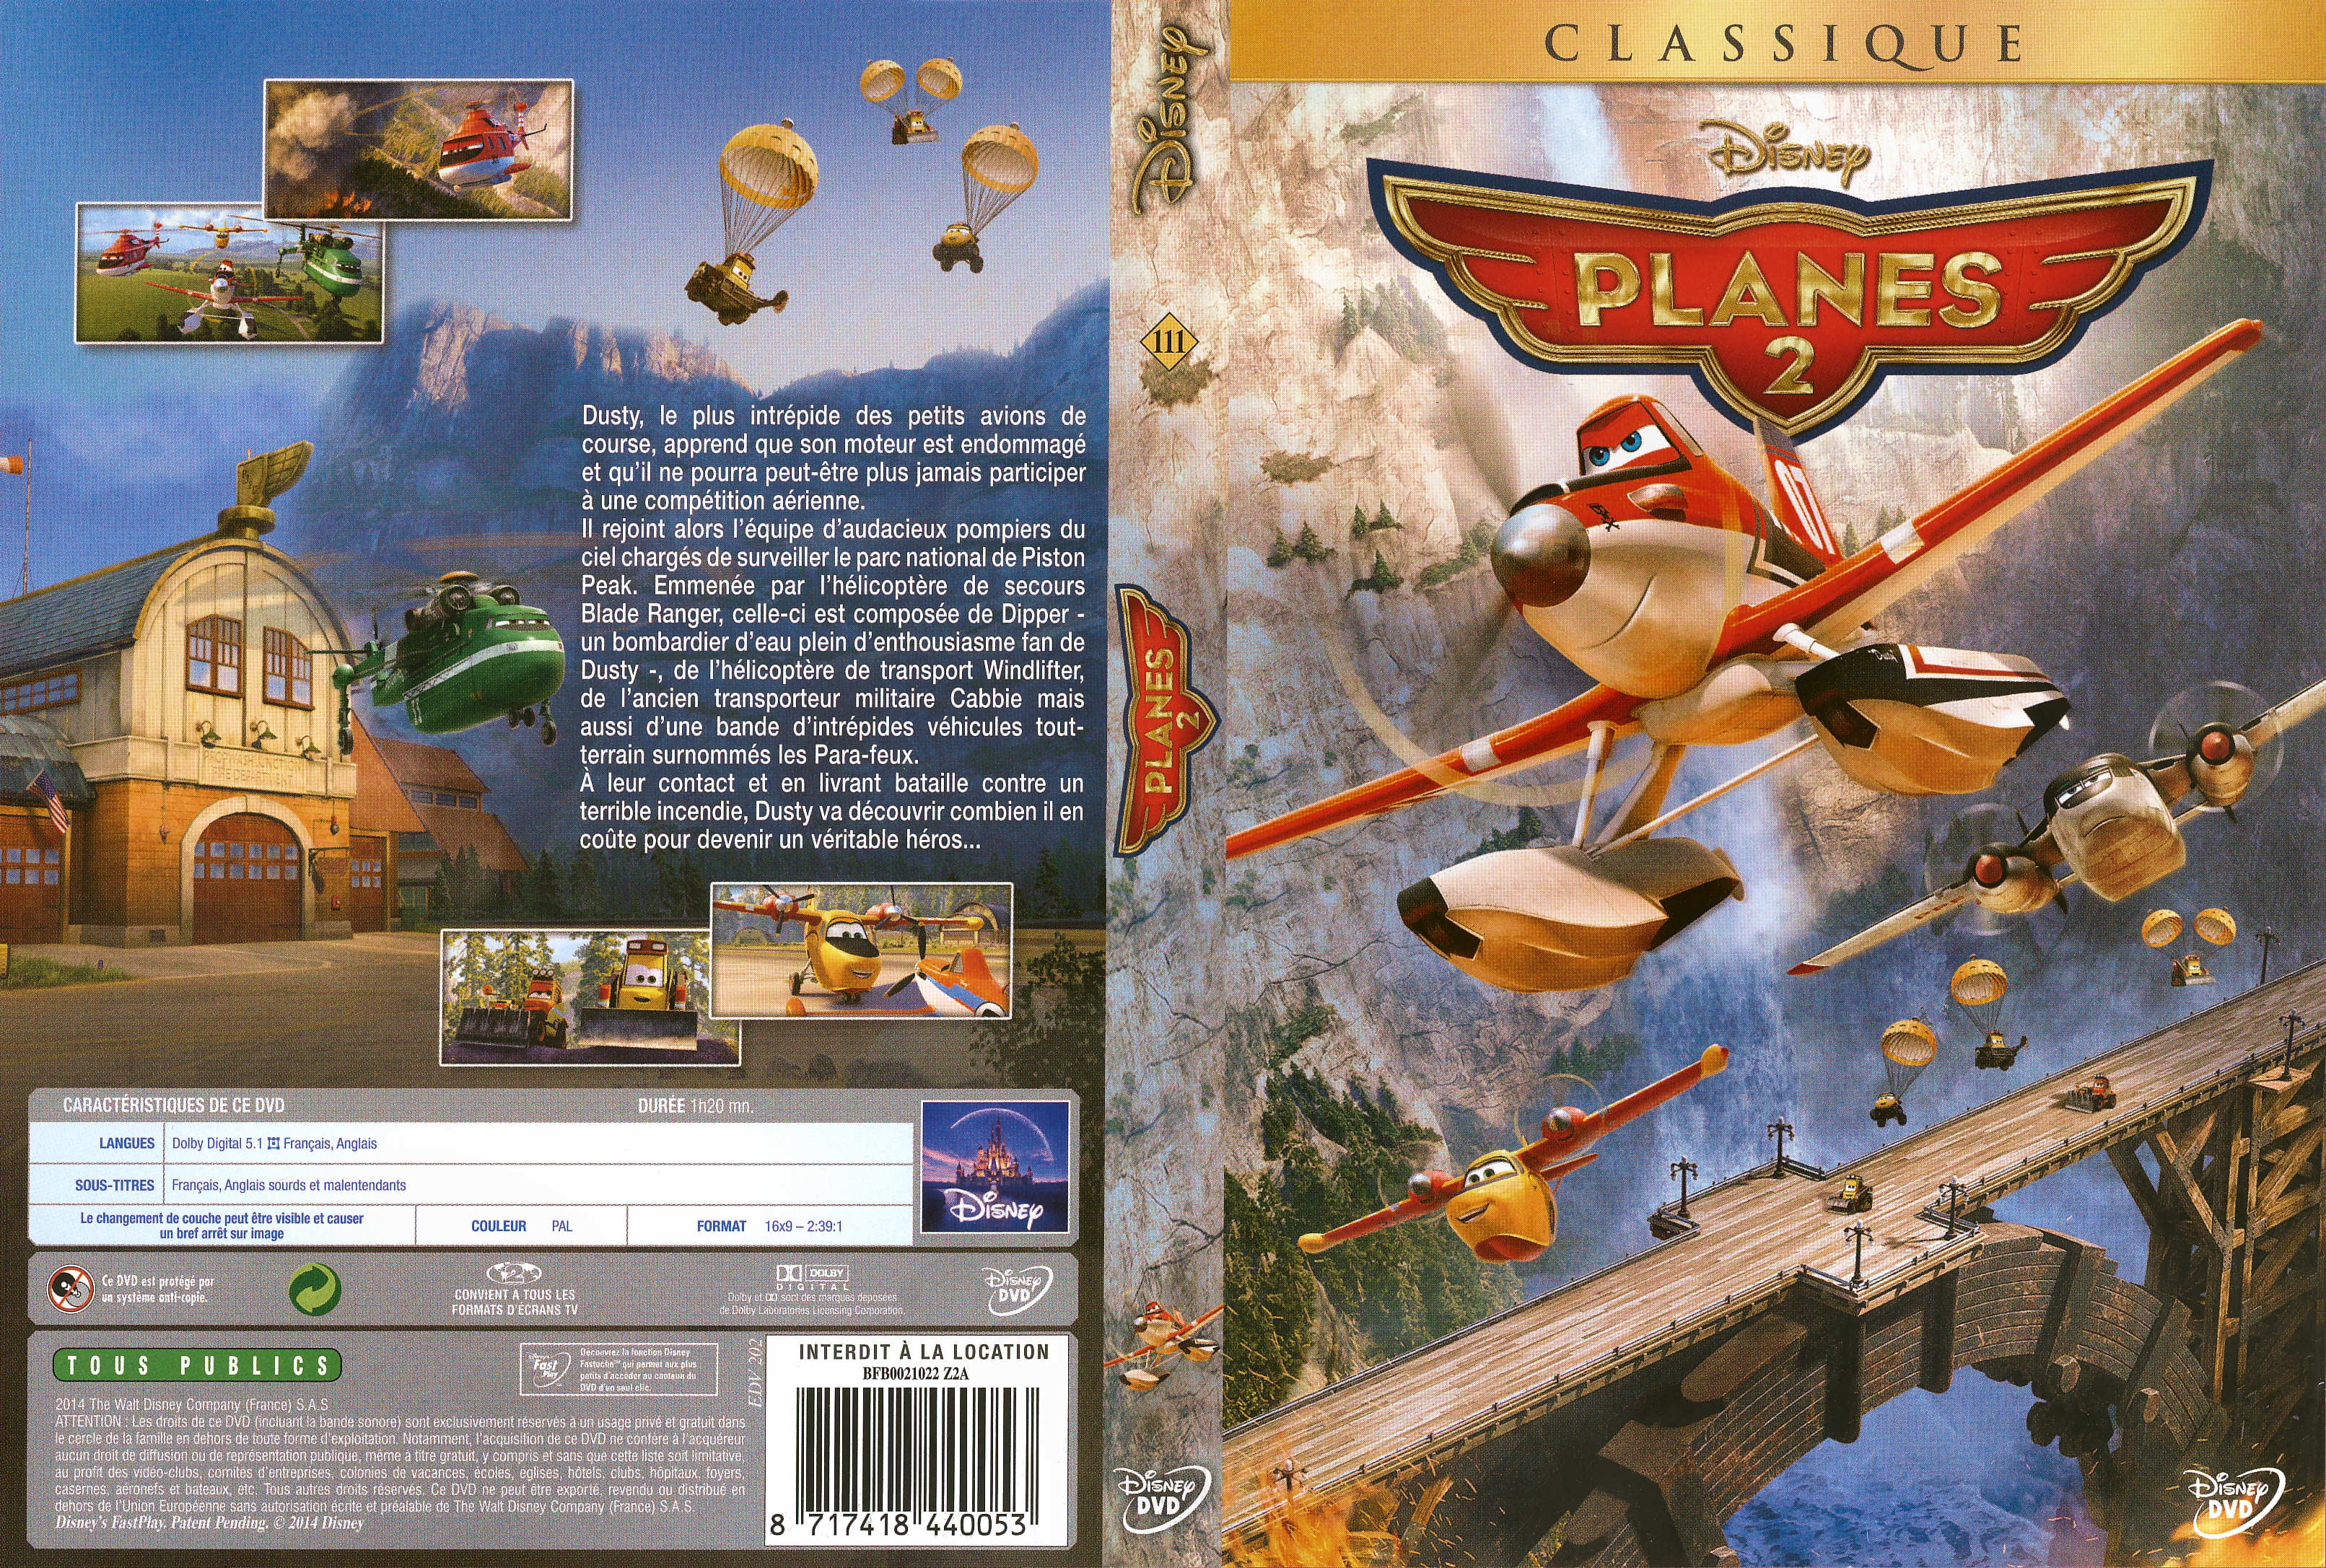 Jaquette DVD Planes 2 v2